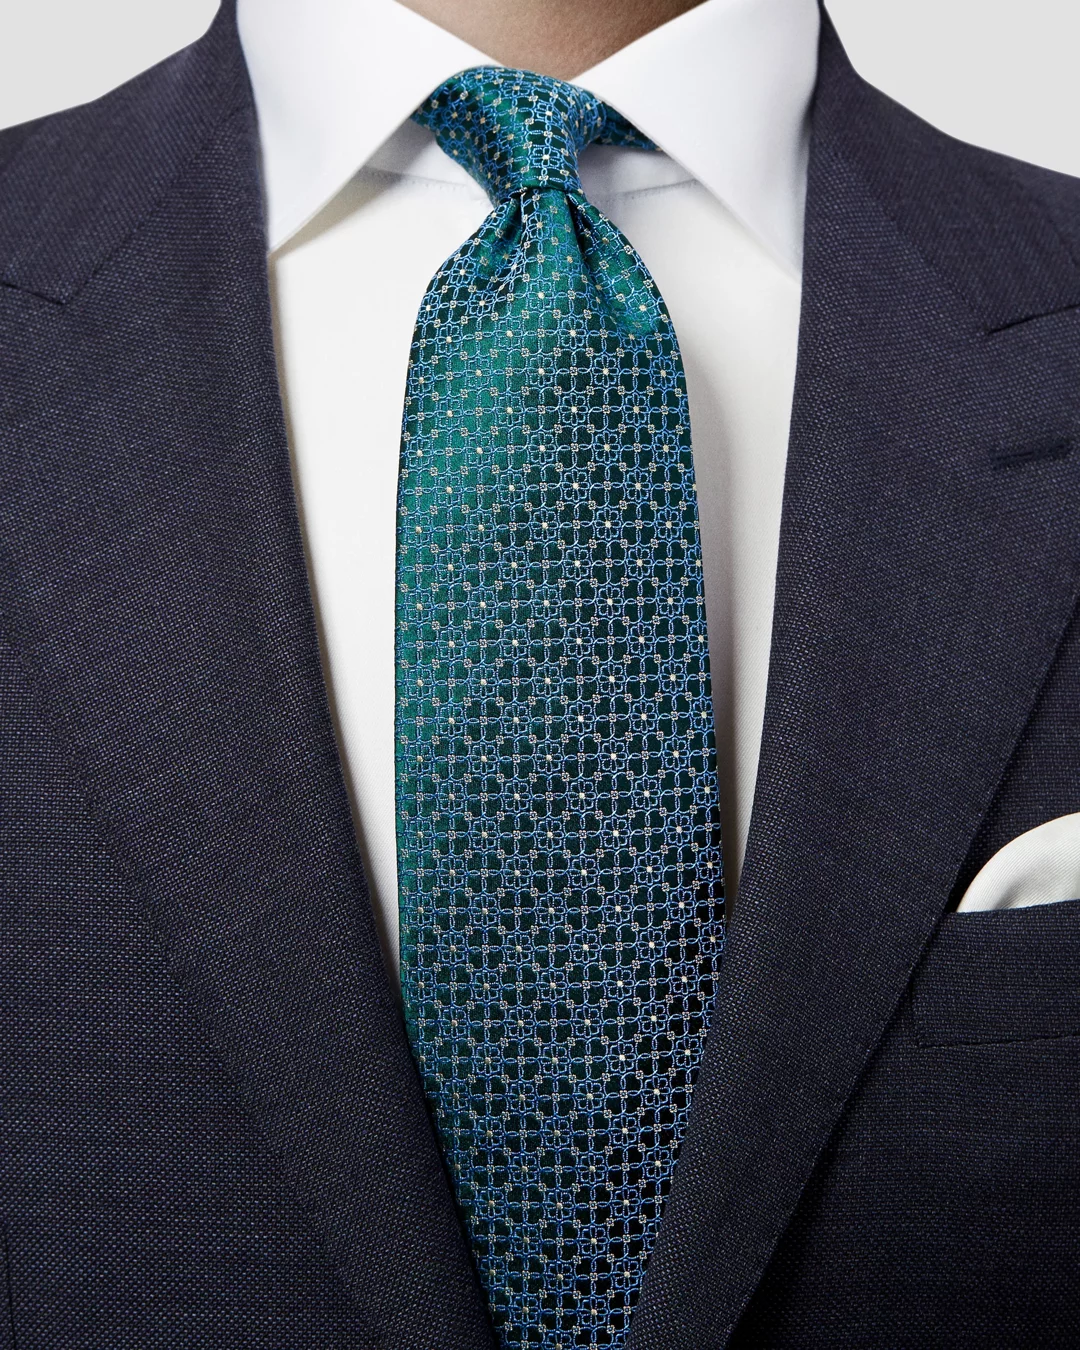 A Stylish Tie